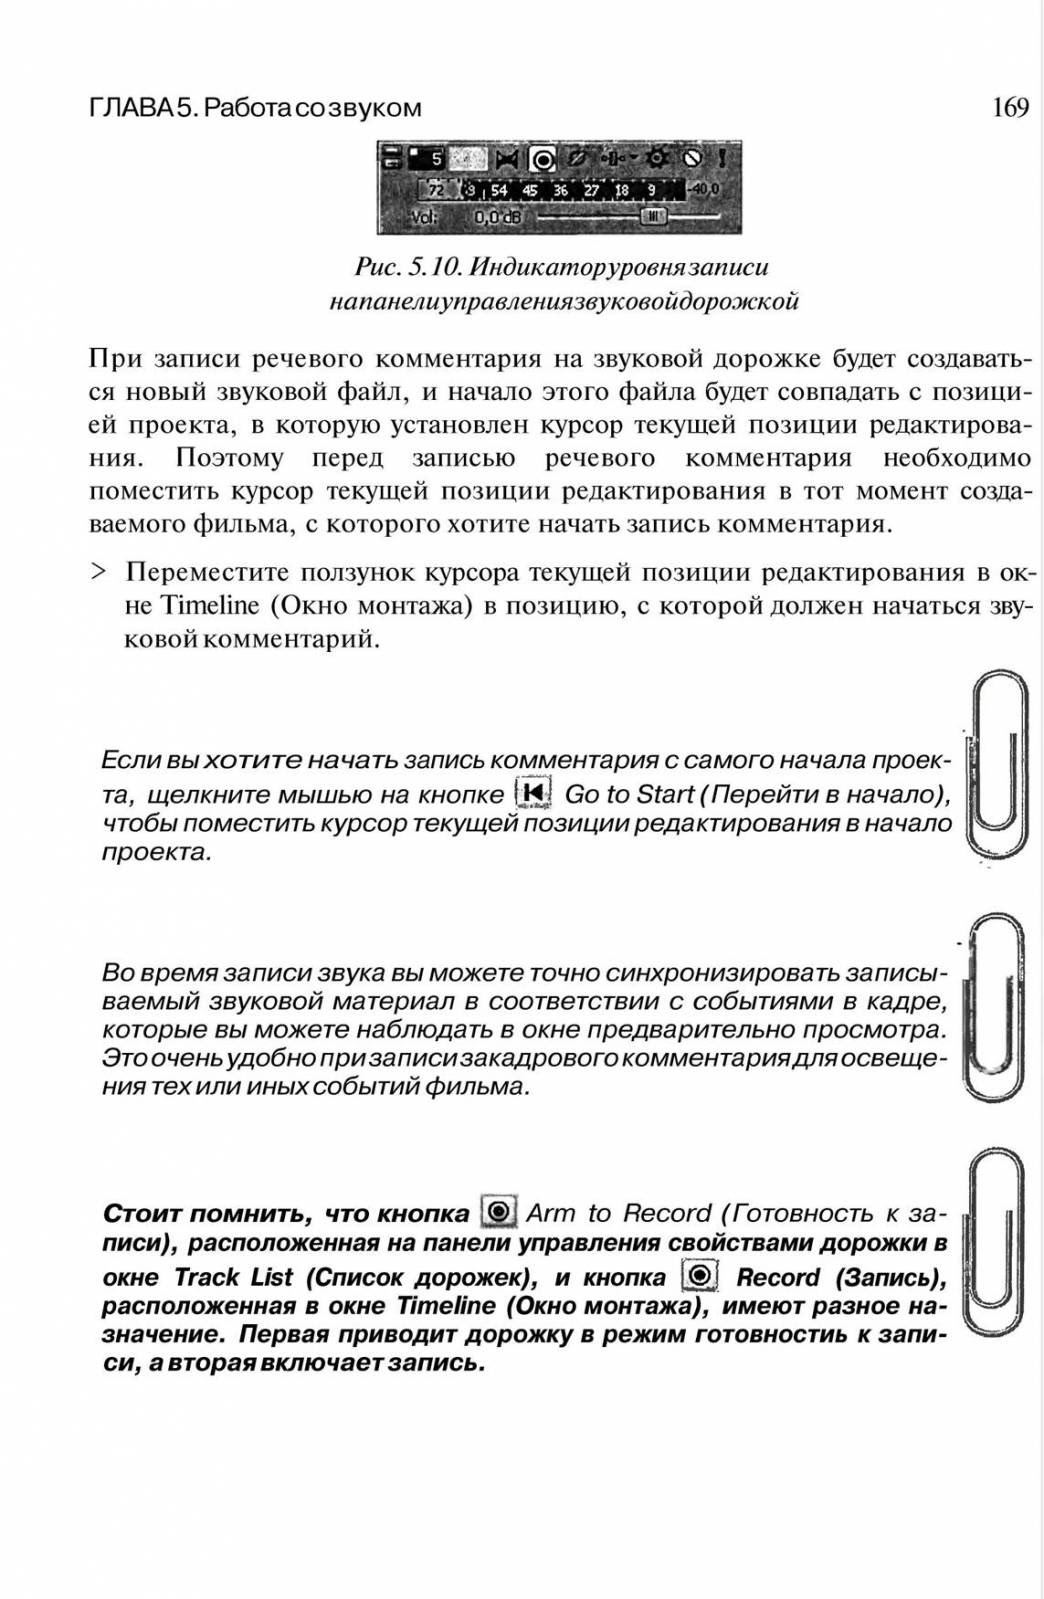 http://redaktori-uroki.3dn.ru/_ph/6/89029258.jpg